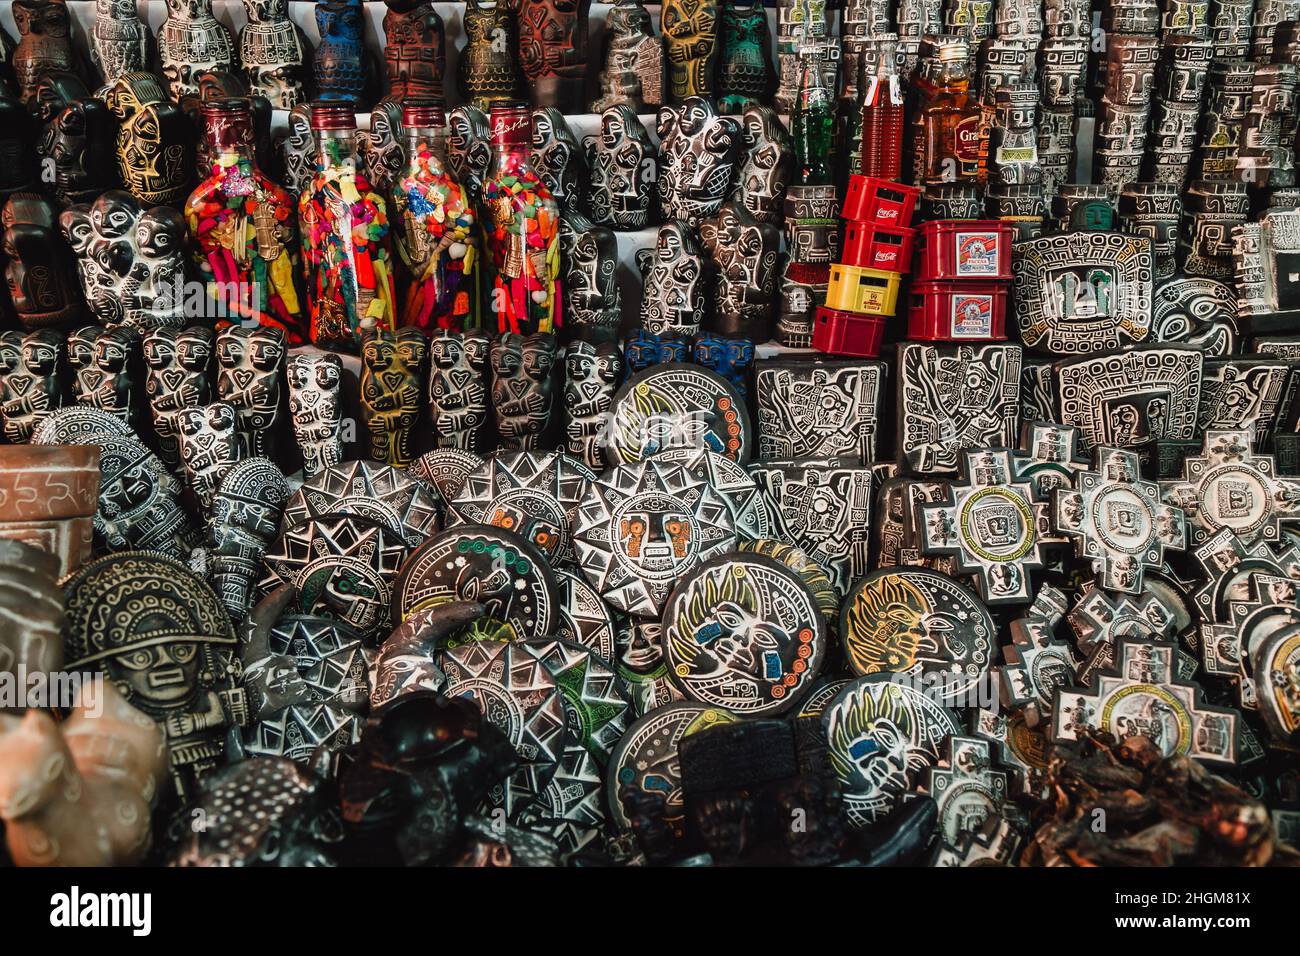 Ceramica Artesanal in un negozio locale di articoli da regalo a la Paz, Bolivia Foto Stock